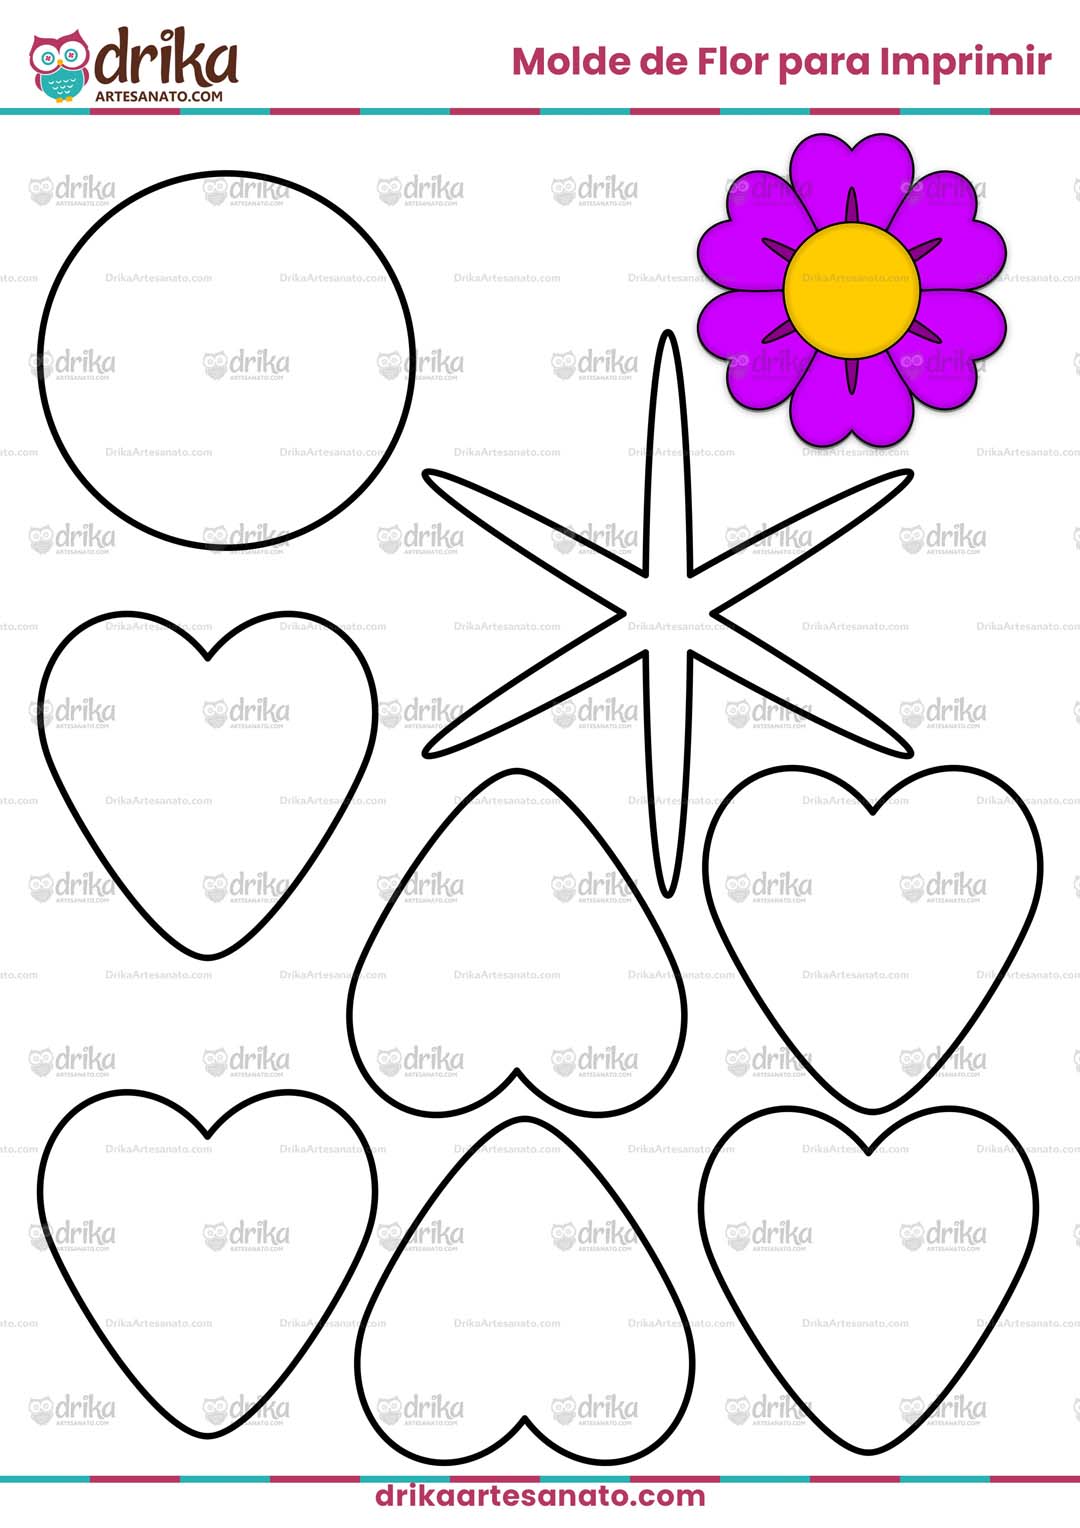 Molde de Flor com 6 Corações para Imprimir em Tamanho Real